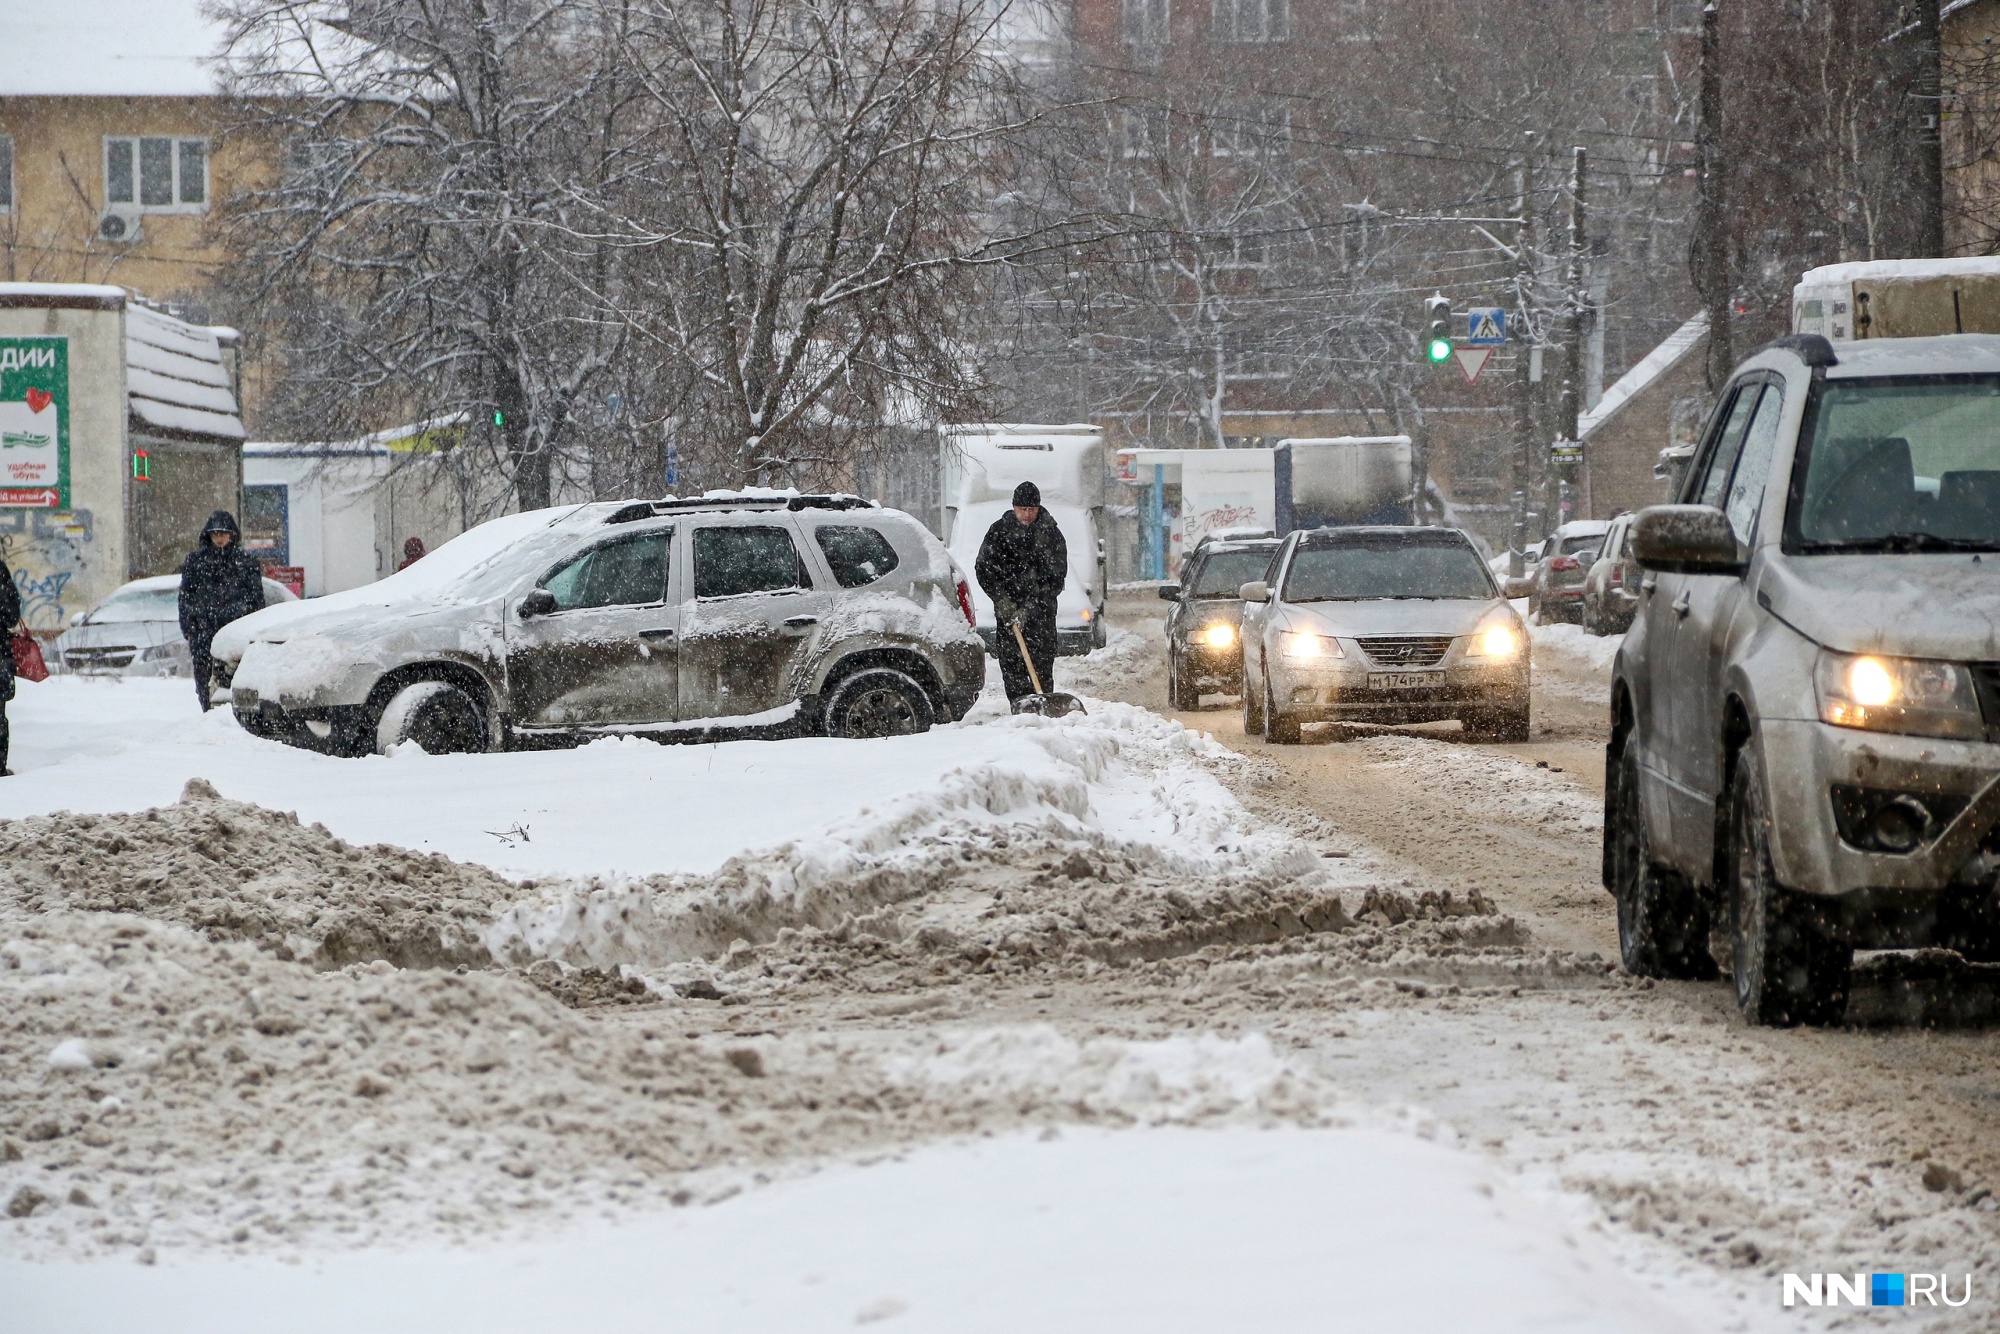 Старший инспектор ДПС попался на крупной взятке за неубранный снег в Нижнем Новгороде